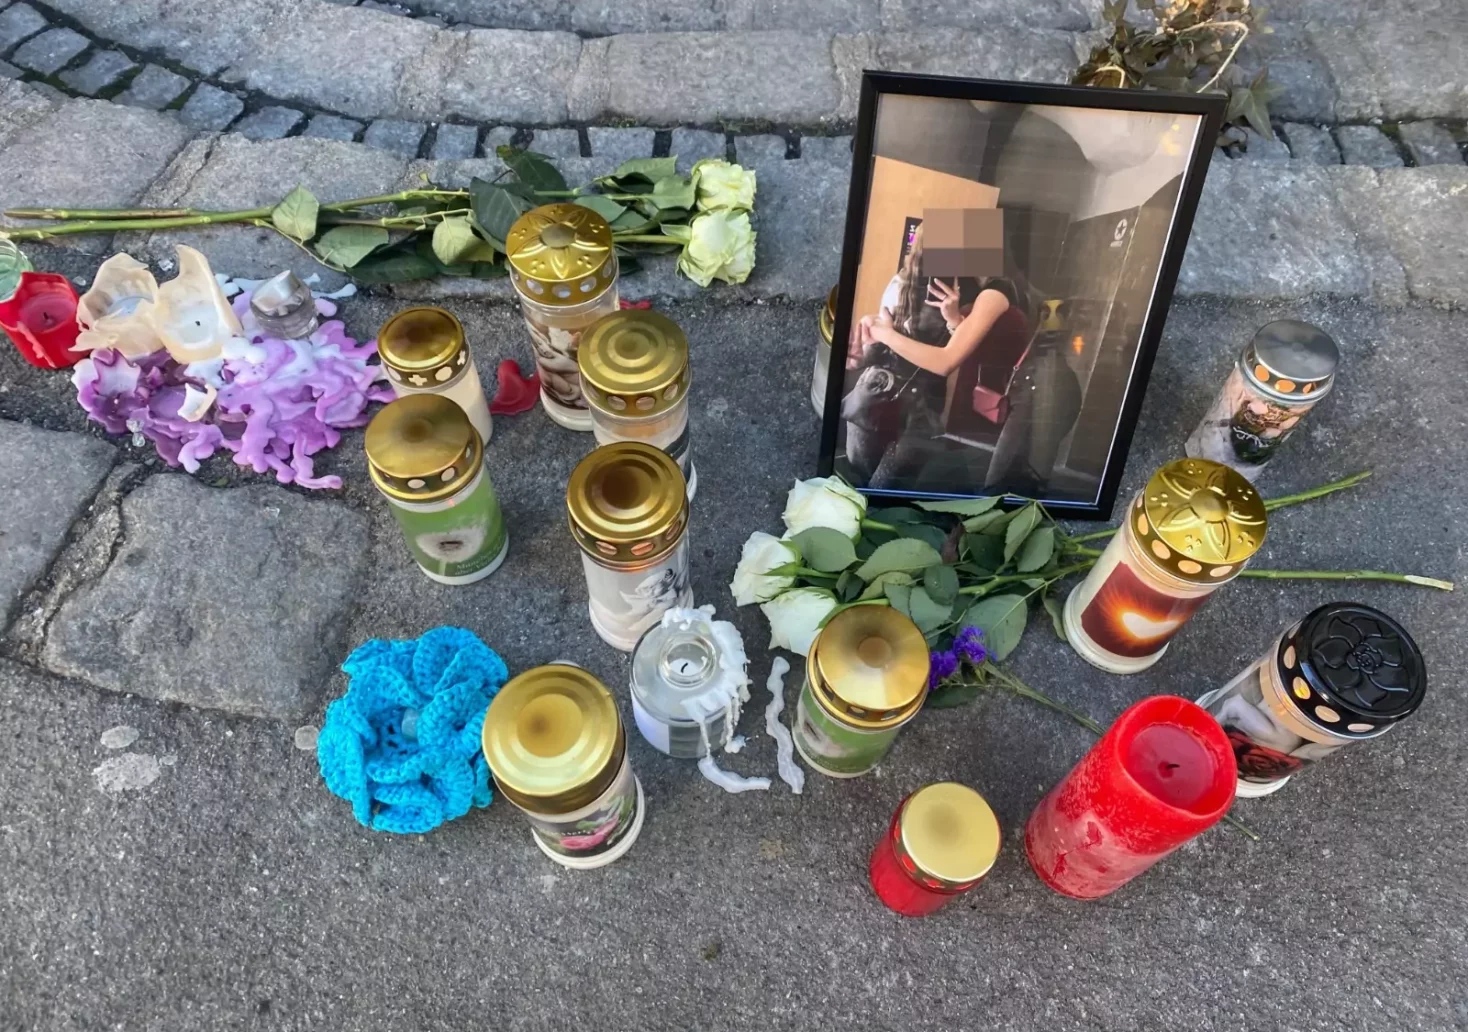 Bild auf 5min.at zeigt ein Bild des Grazer Brandopfers von der Silvesternacht. Daneben stehen Kerzen und Blumen.